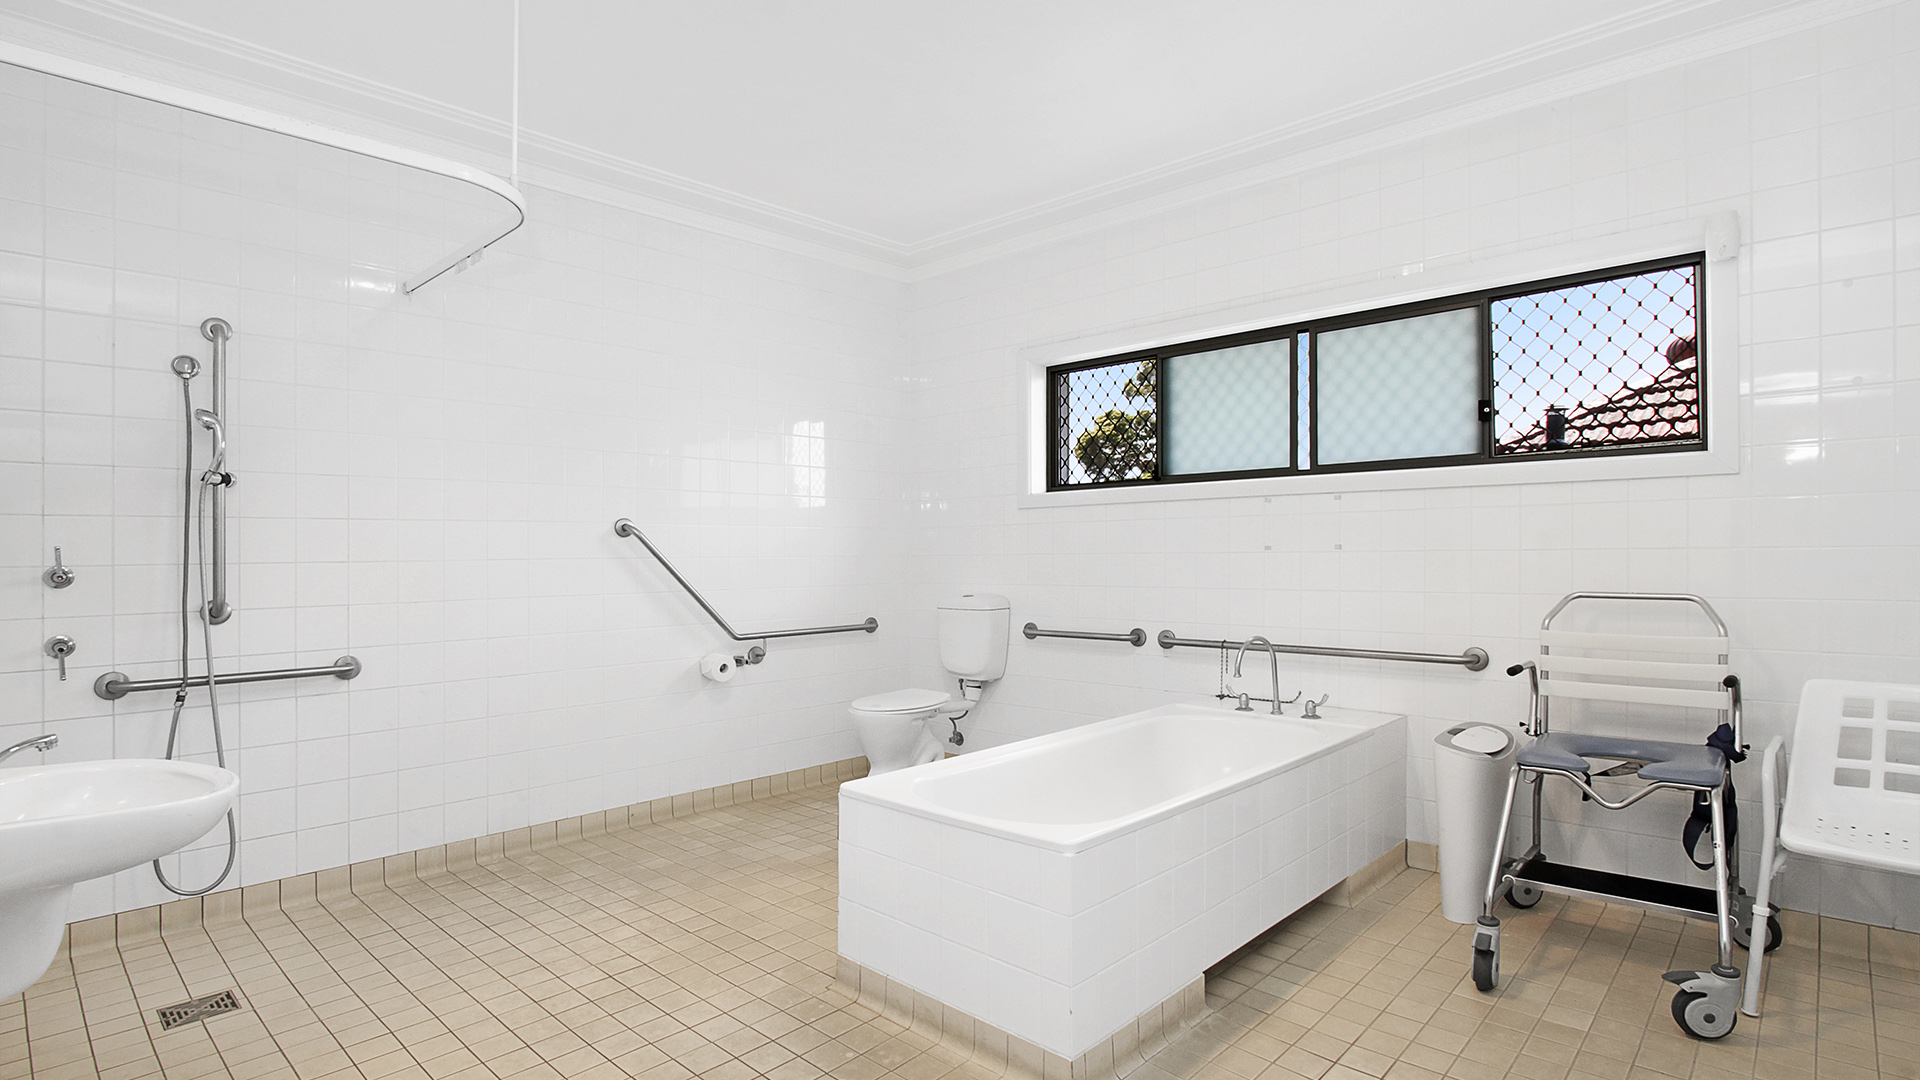 Cabramatta respite house image - bathroom